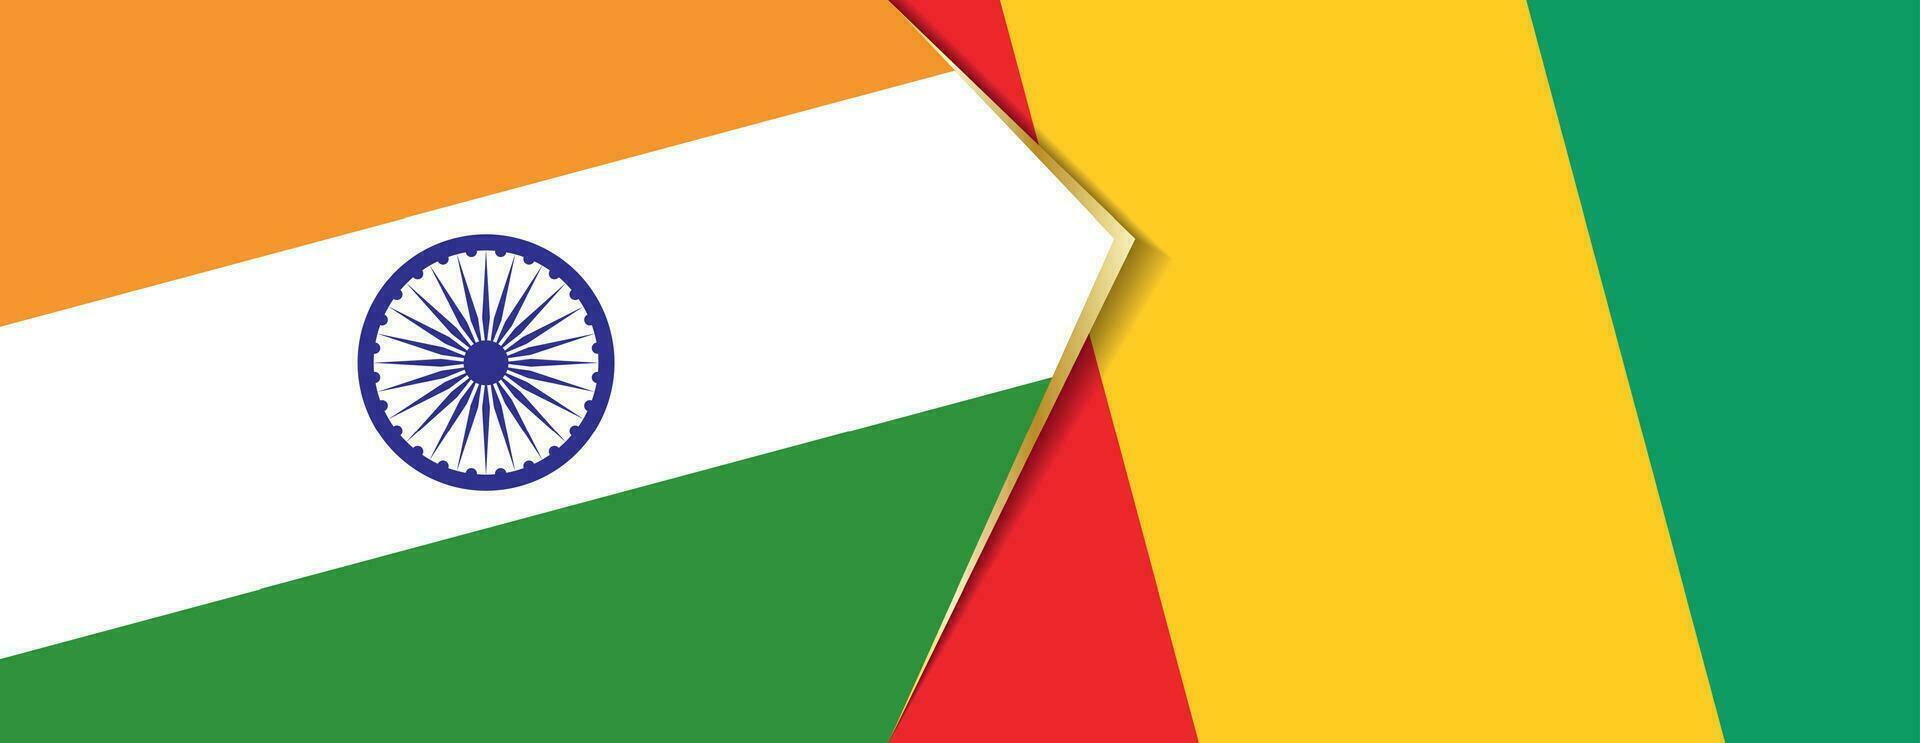 Inde et Guinée drapeaux, deux vecteur drapeaux.